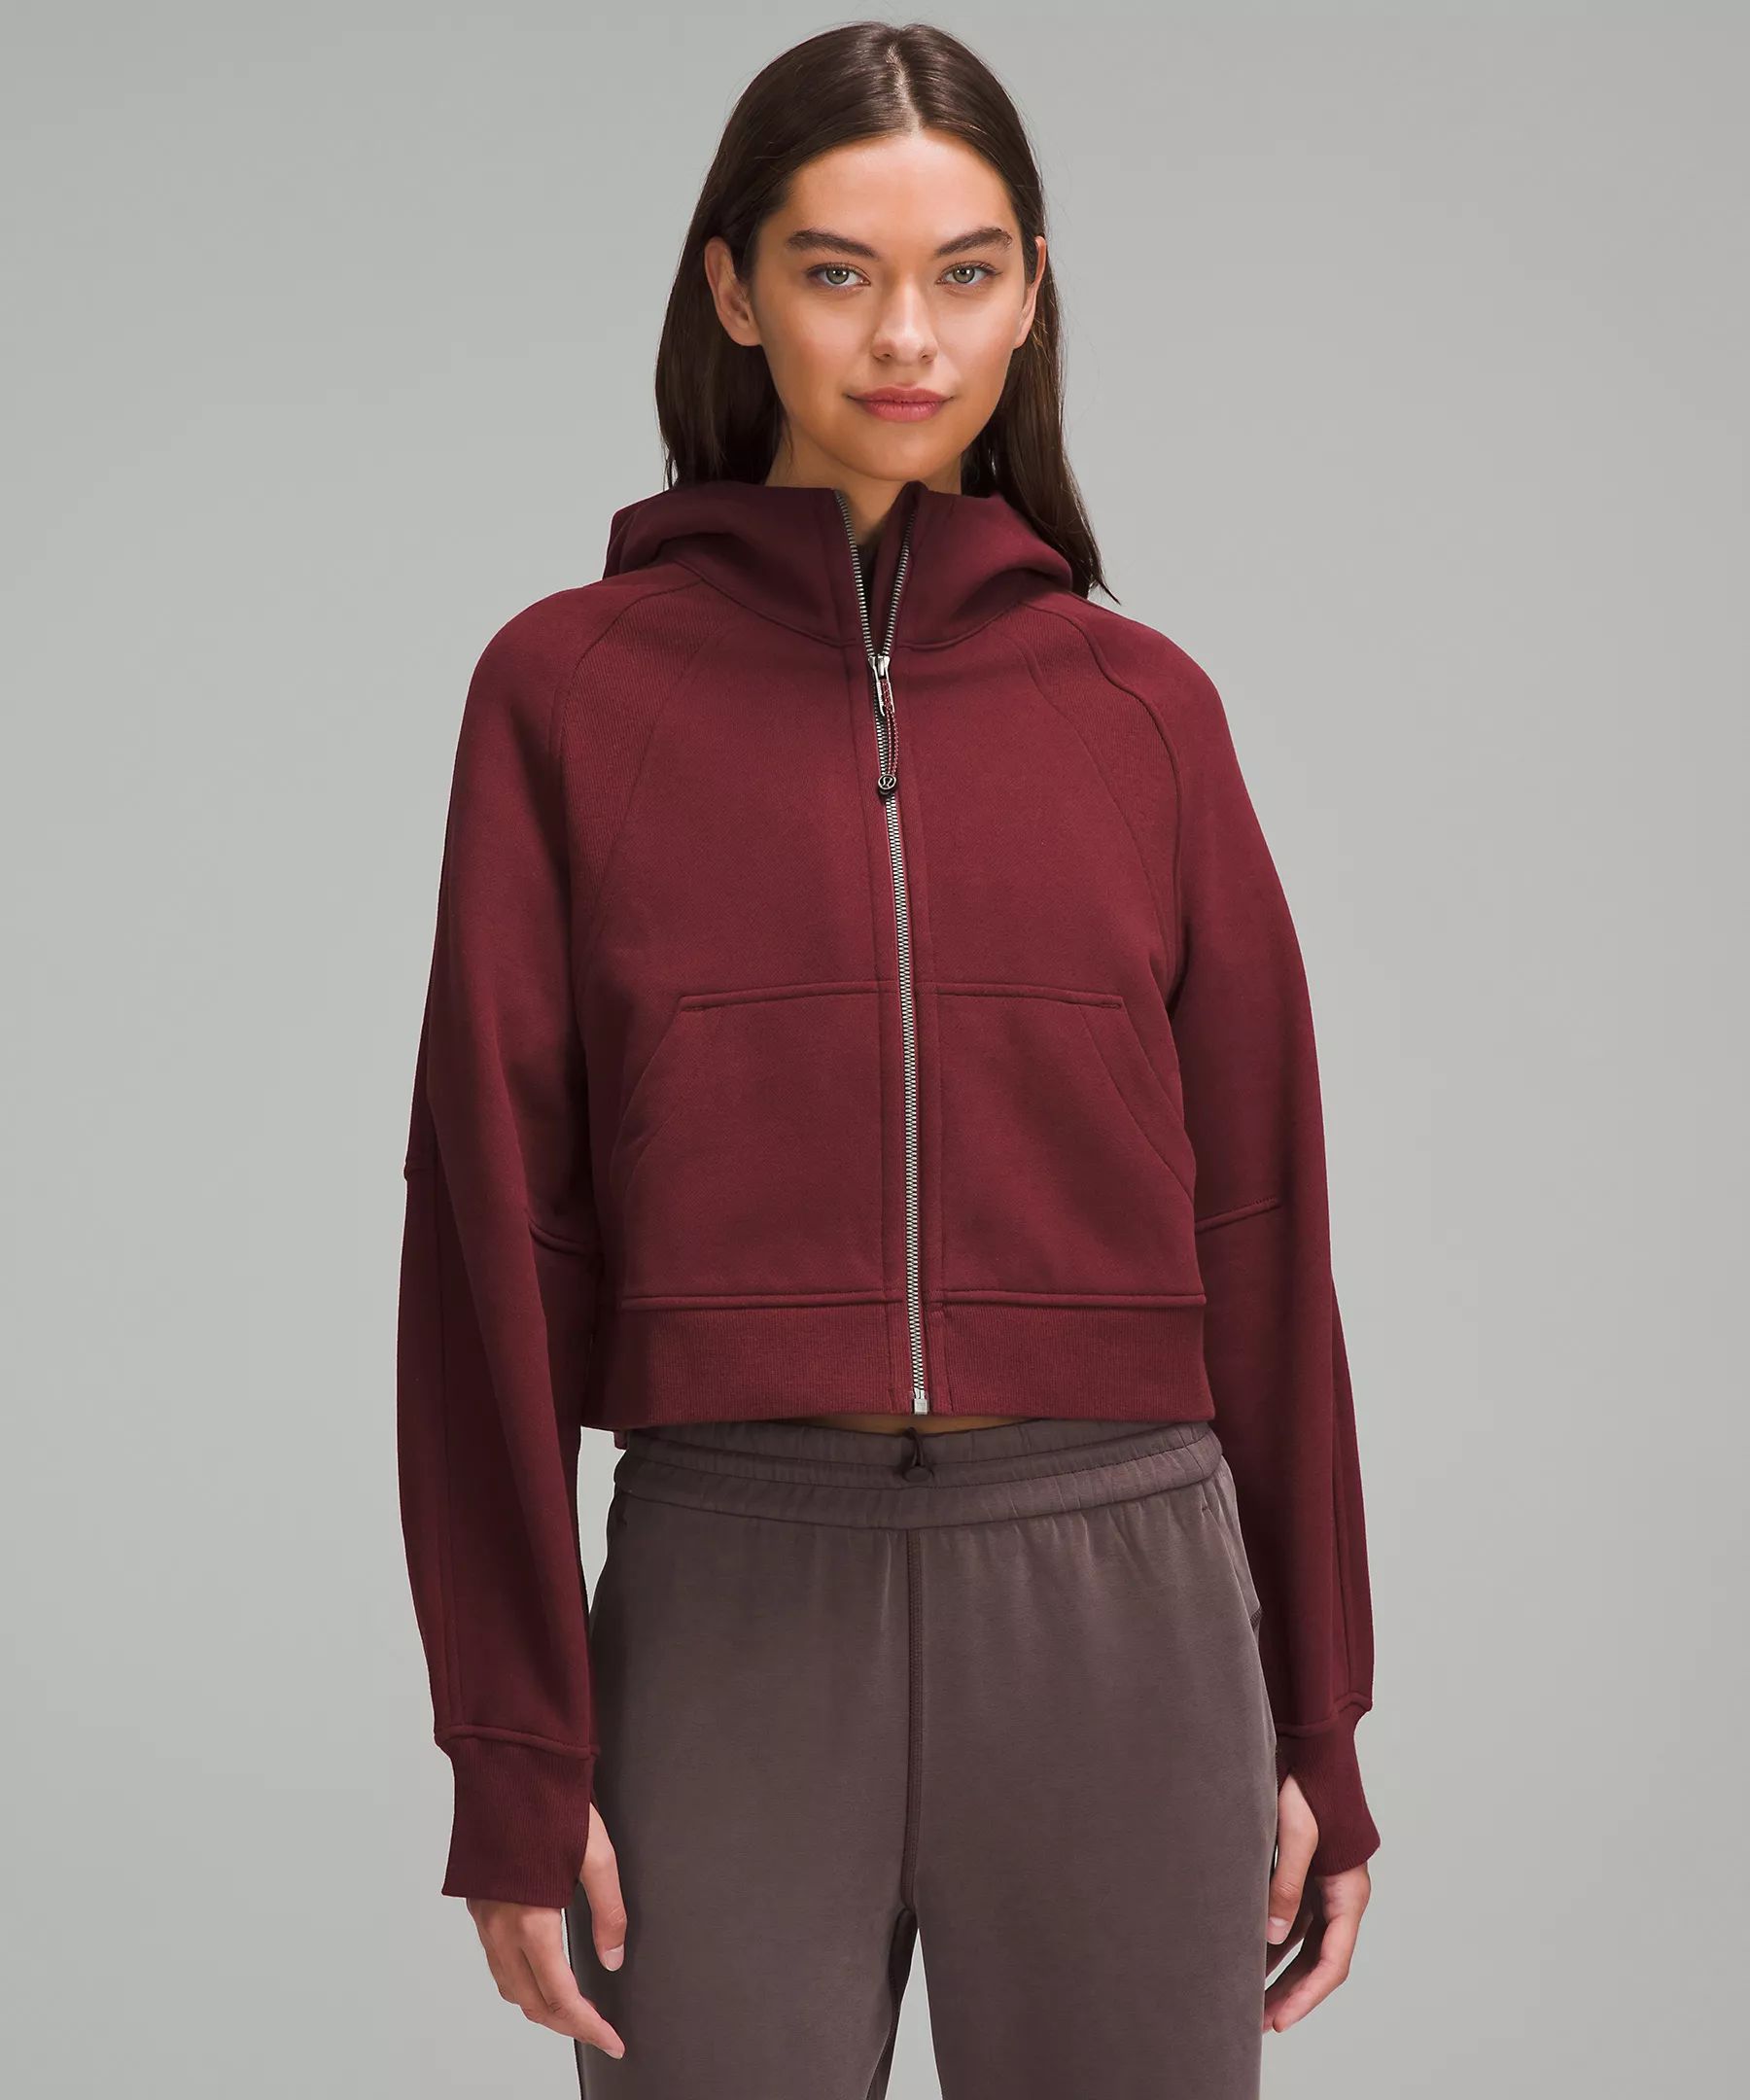 Scuba Oversized Full Zip | Women's Hoodies & Sweatshirts | lululemon | Lululemon (US)